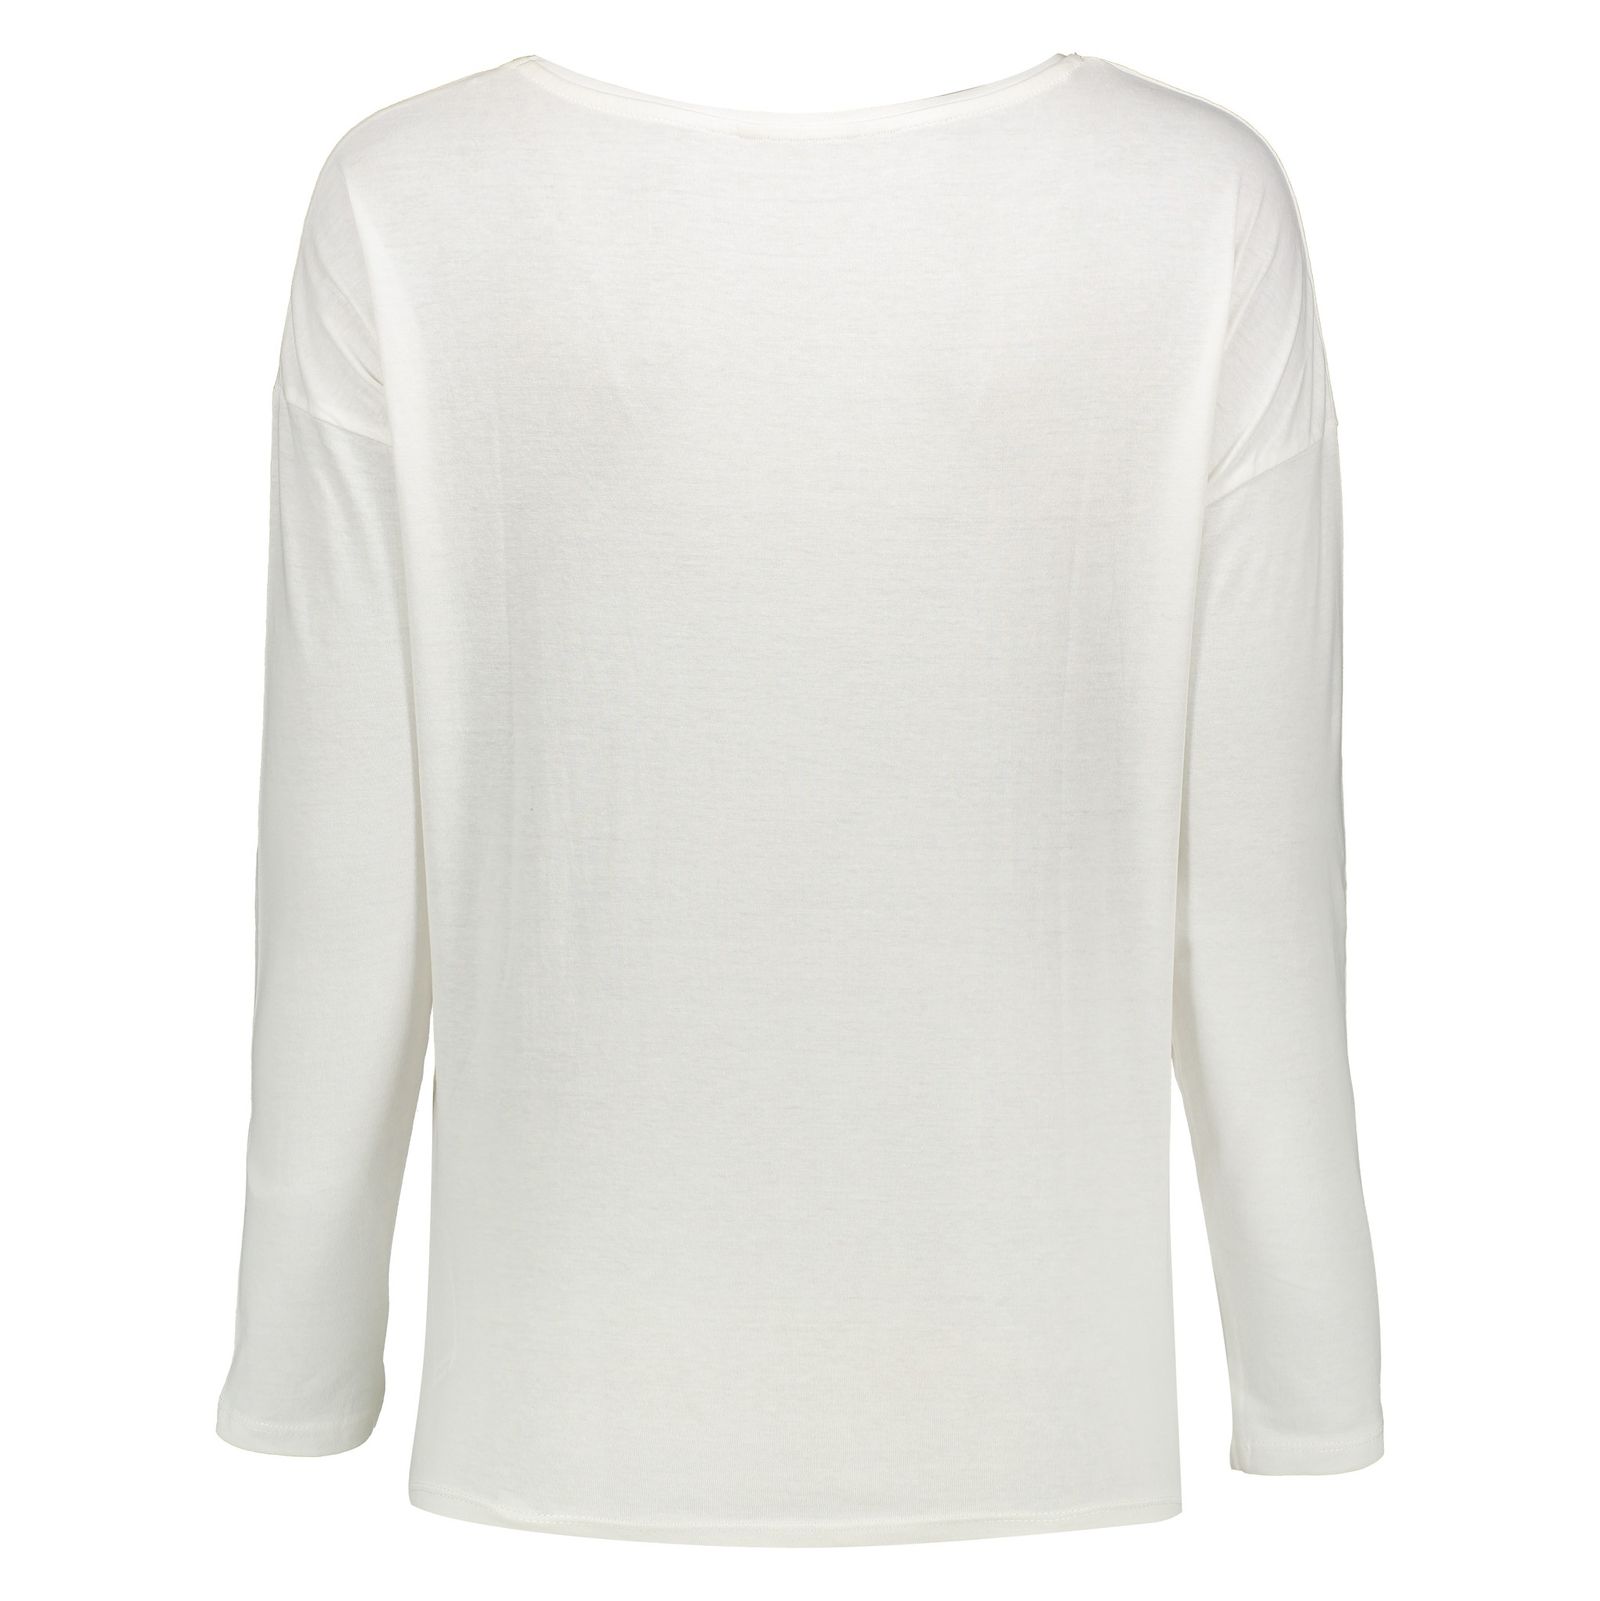 تی شرت زنانه اسپرینگ فیلد مدل 0074578-WHITE - سفید - 4